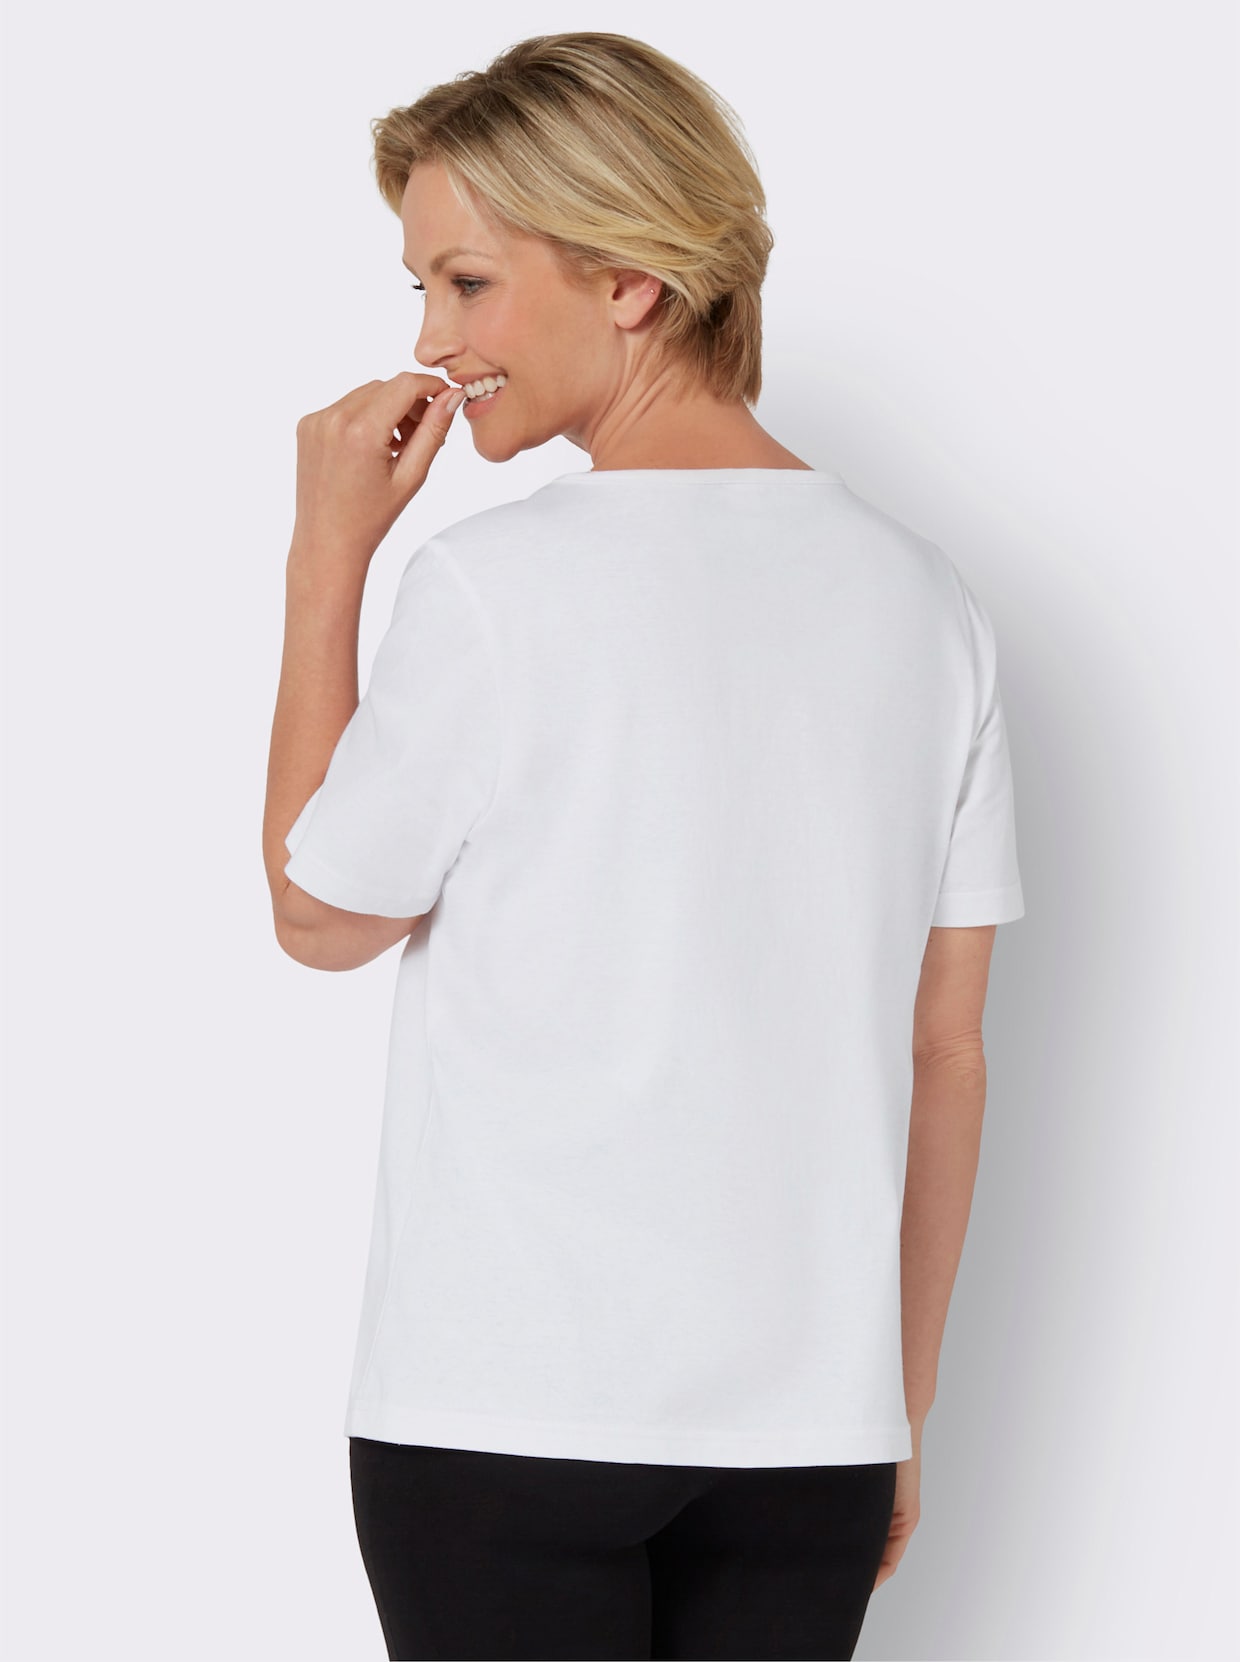 Tričko s krátkymi rukávmi - bielo-striebristá